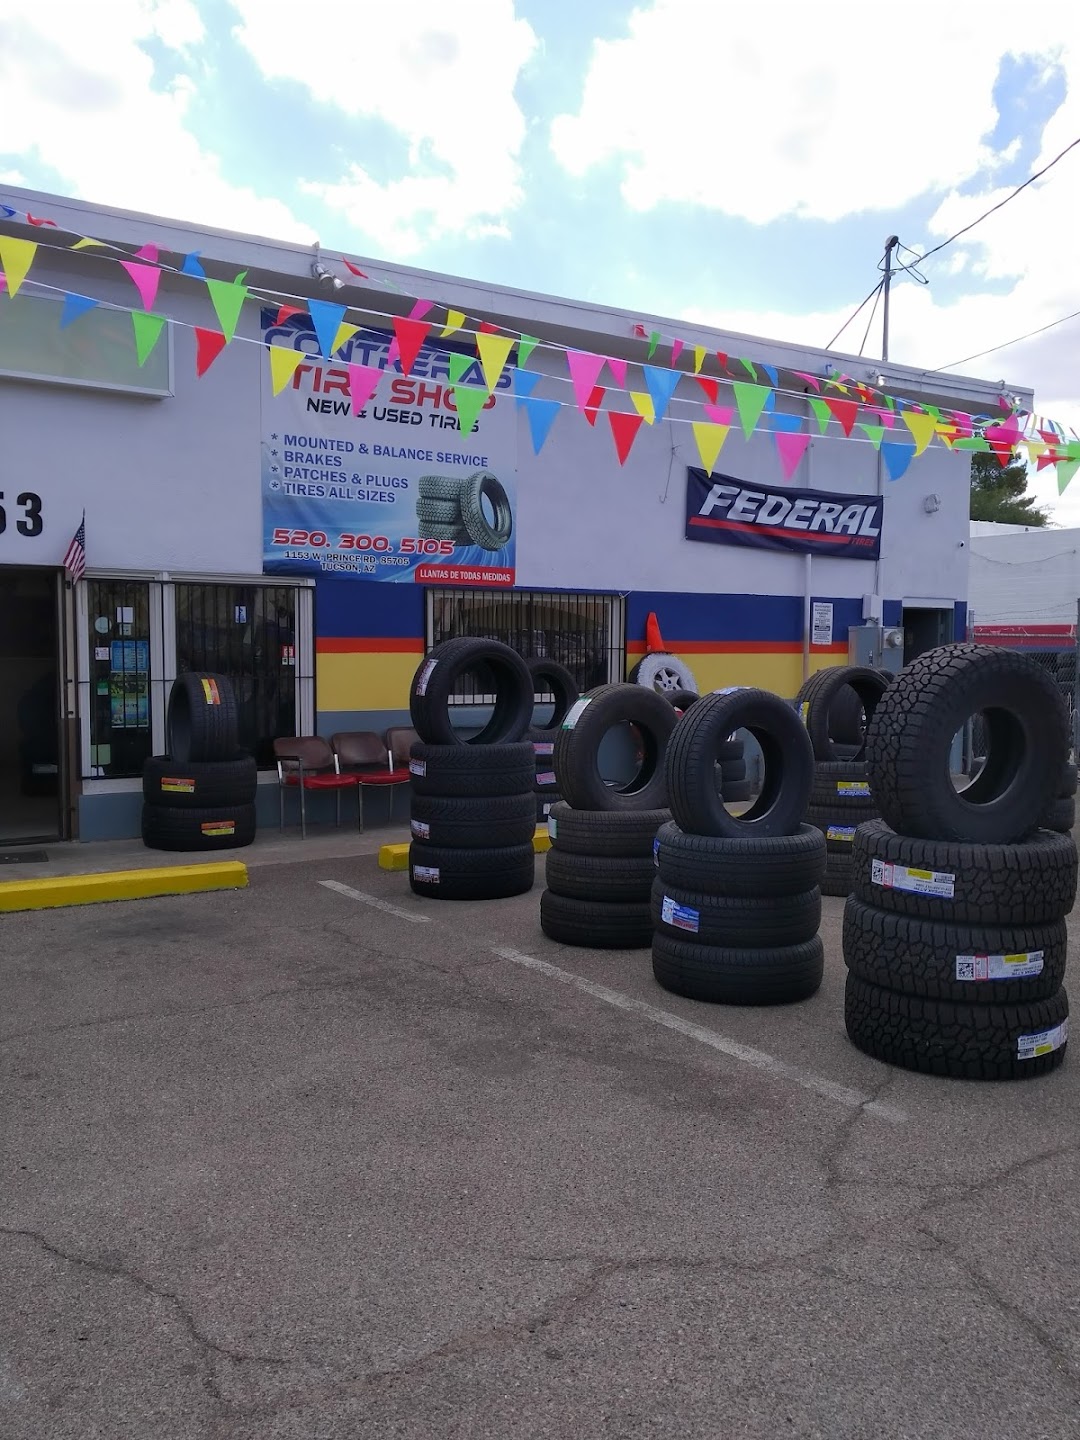 Contreras Tire Shop LLC